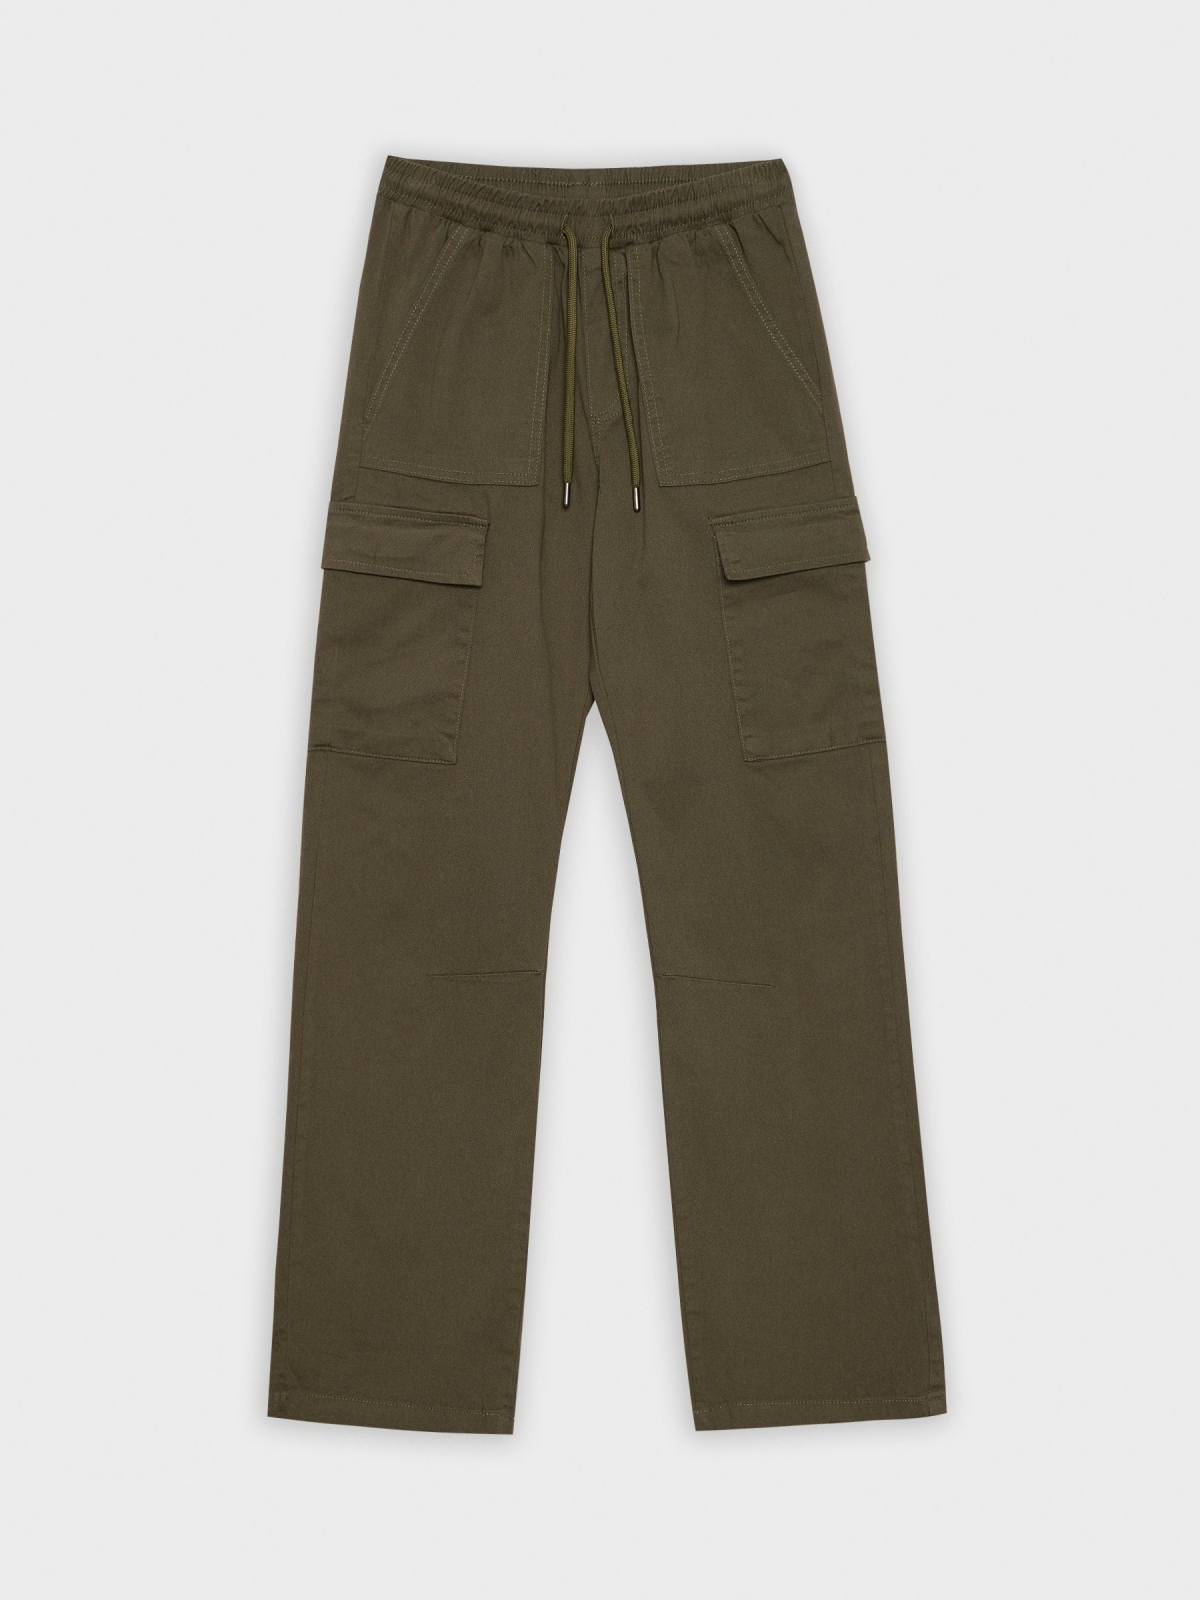  Cargo pants pockets khaki